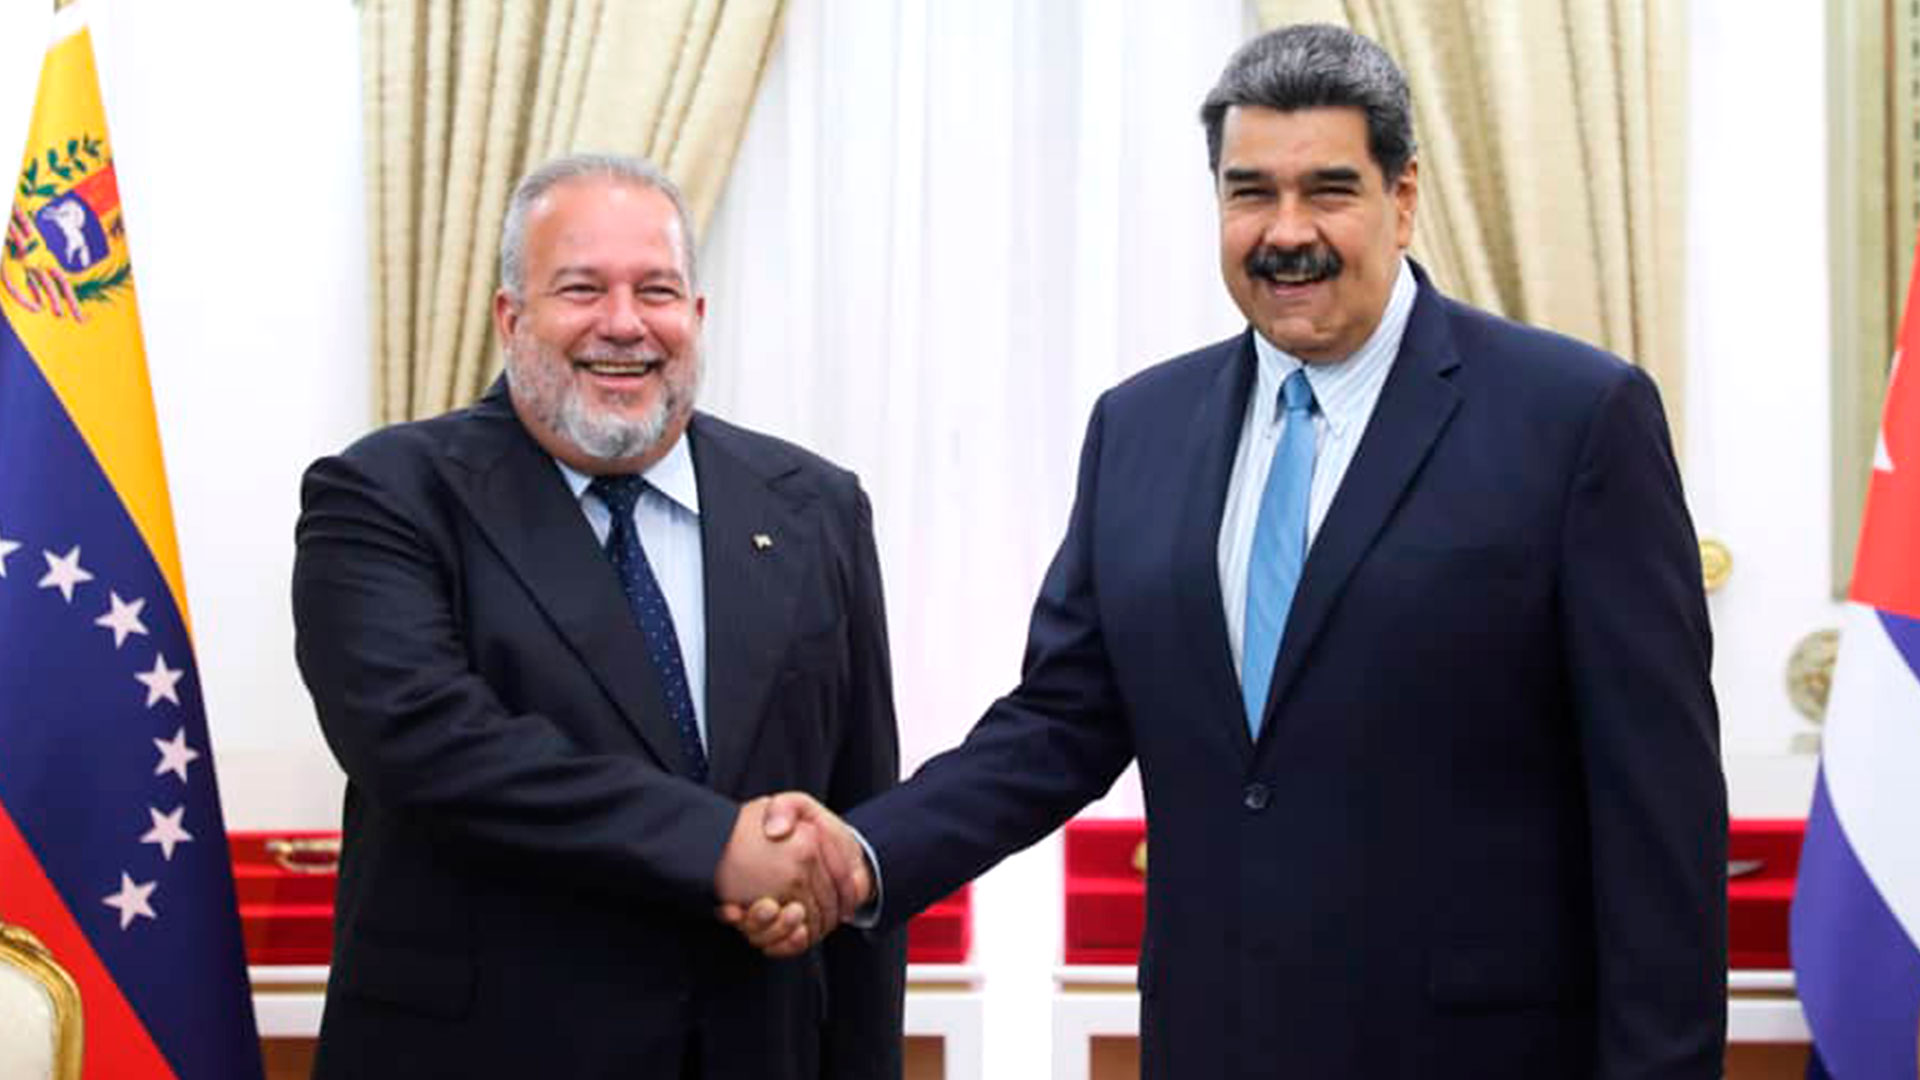 Las dictaduras de Venezuela y Cuba acordaron una “refundación creadora y profunda” del mapa de cooperación